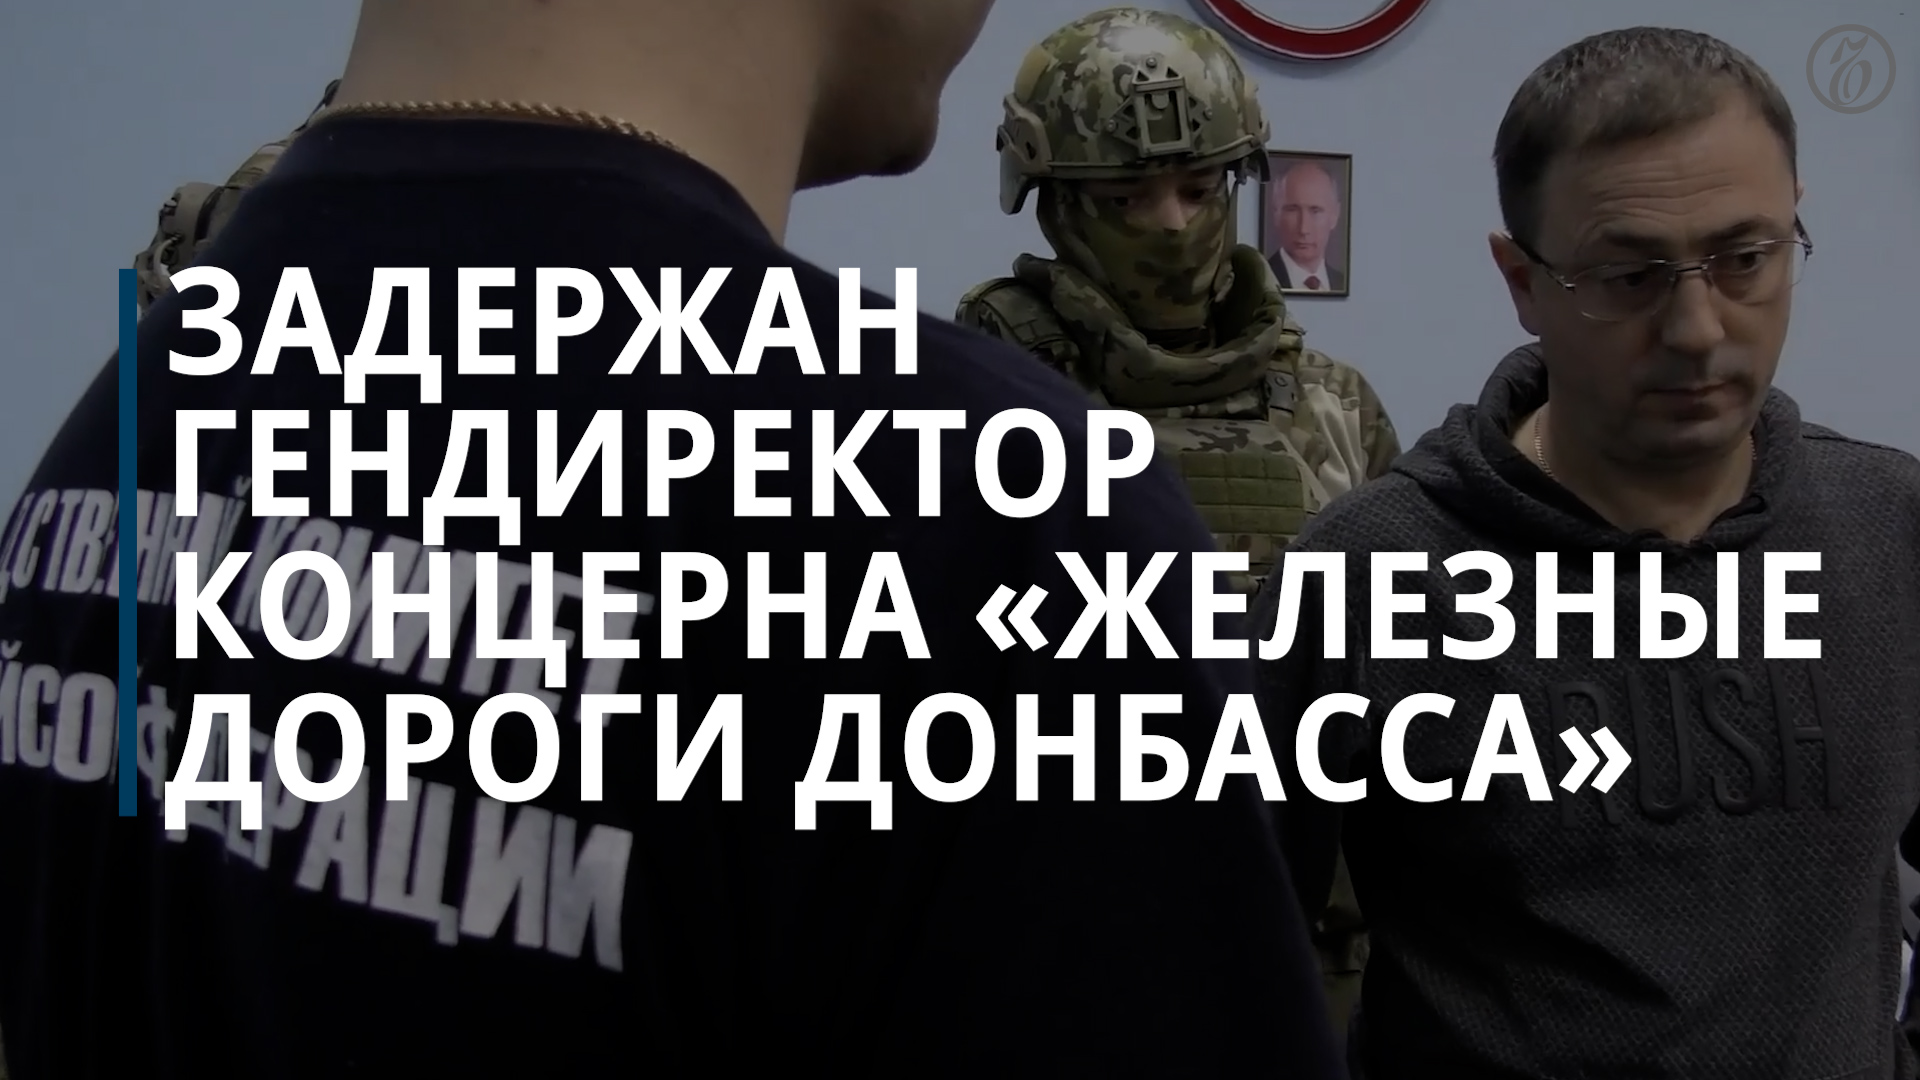 Задержан гендиректор концерна «Железные дороги Донбасса» — Коммерсантъ